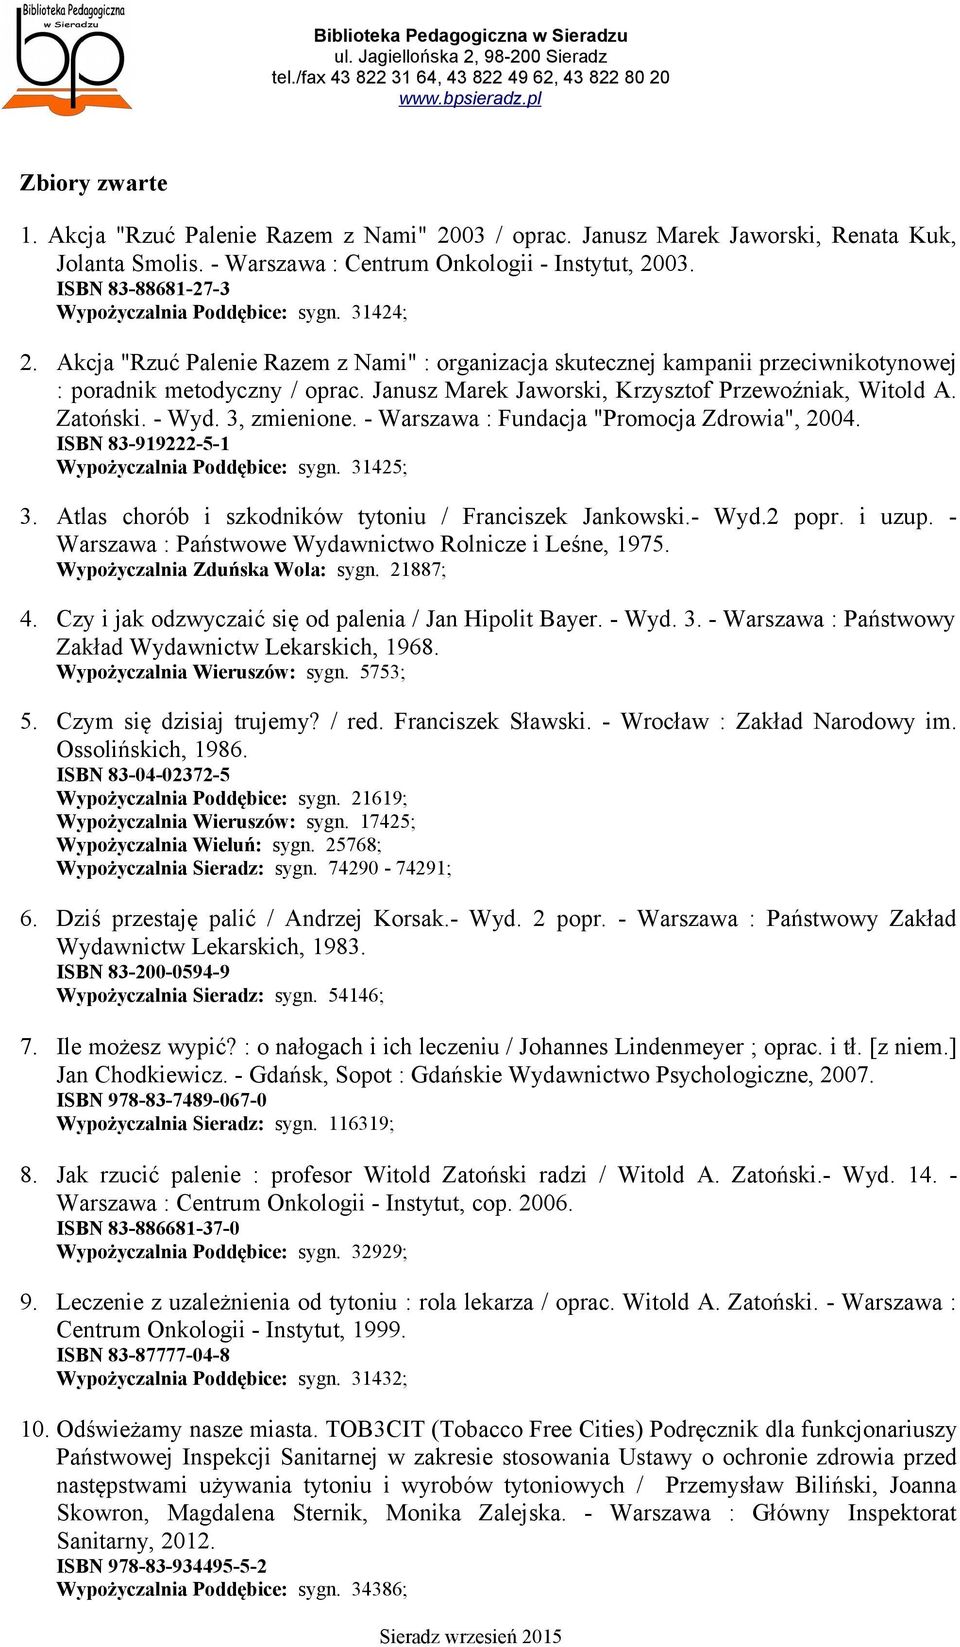 Janusz Marek Jaworski, Krzysztof Przewoźniak, Witold A. Zatoński. - Wyd. 3, zmienione. - Warszawa : Fundacja "Promocja Zdrowia", 2004. ISBN 83-919222-5-1 Wypożyczalnia Poddębice: sygn. 31425; 3.